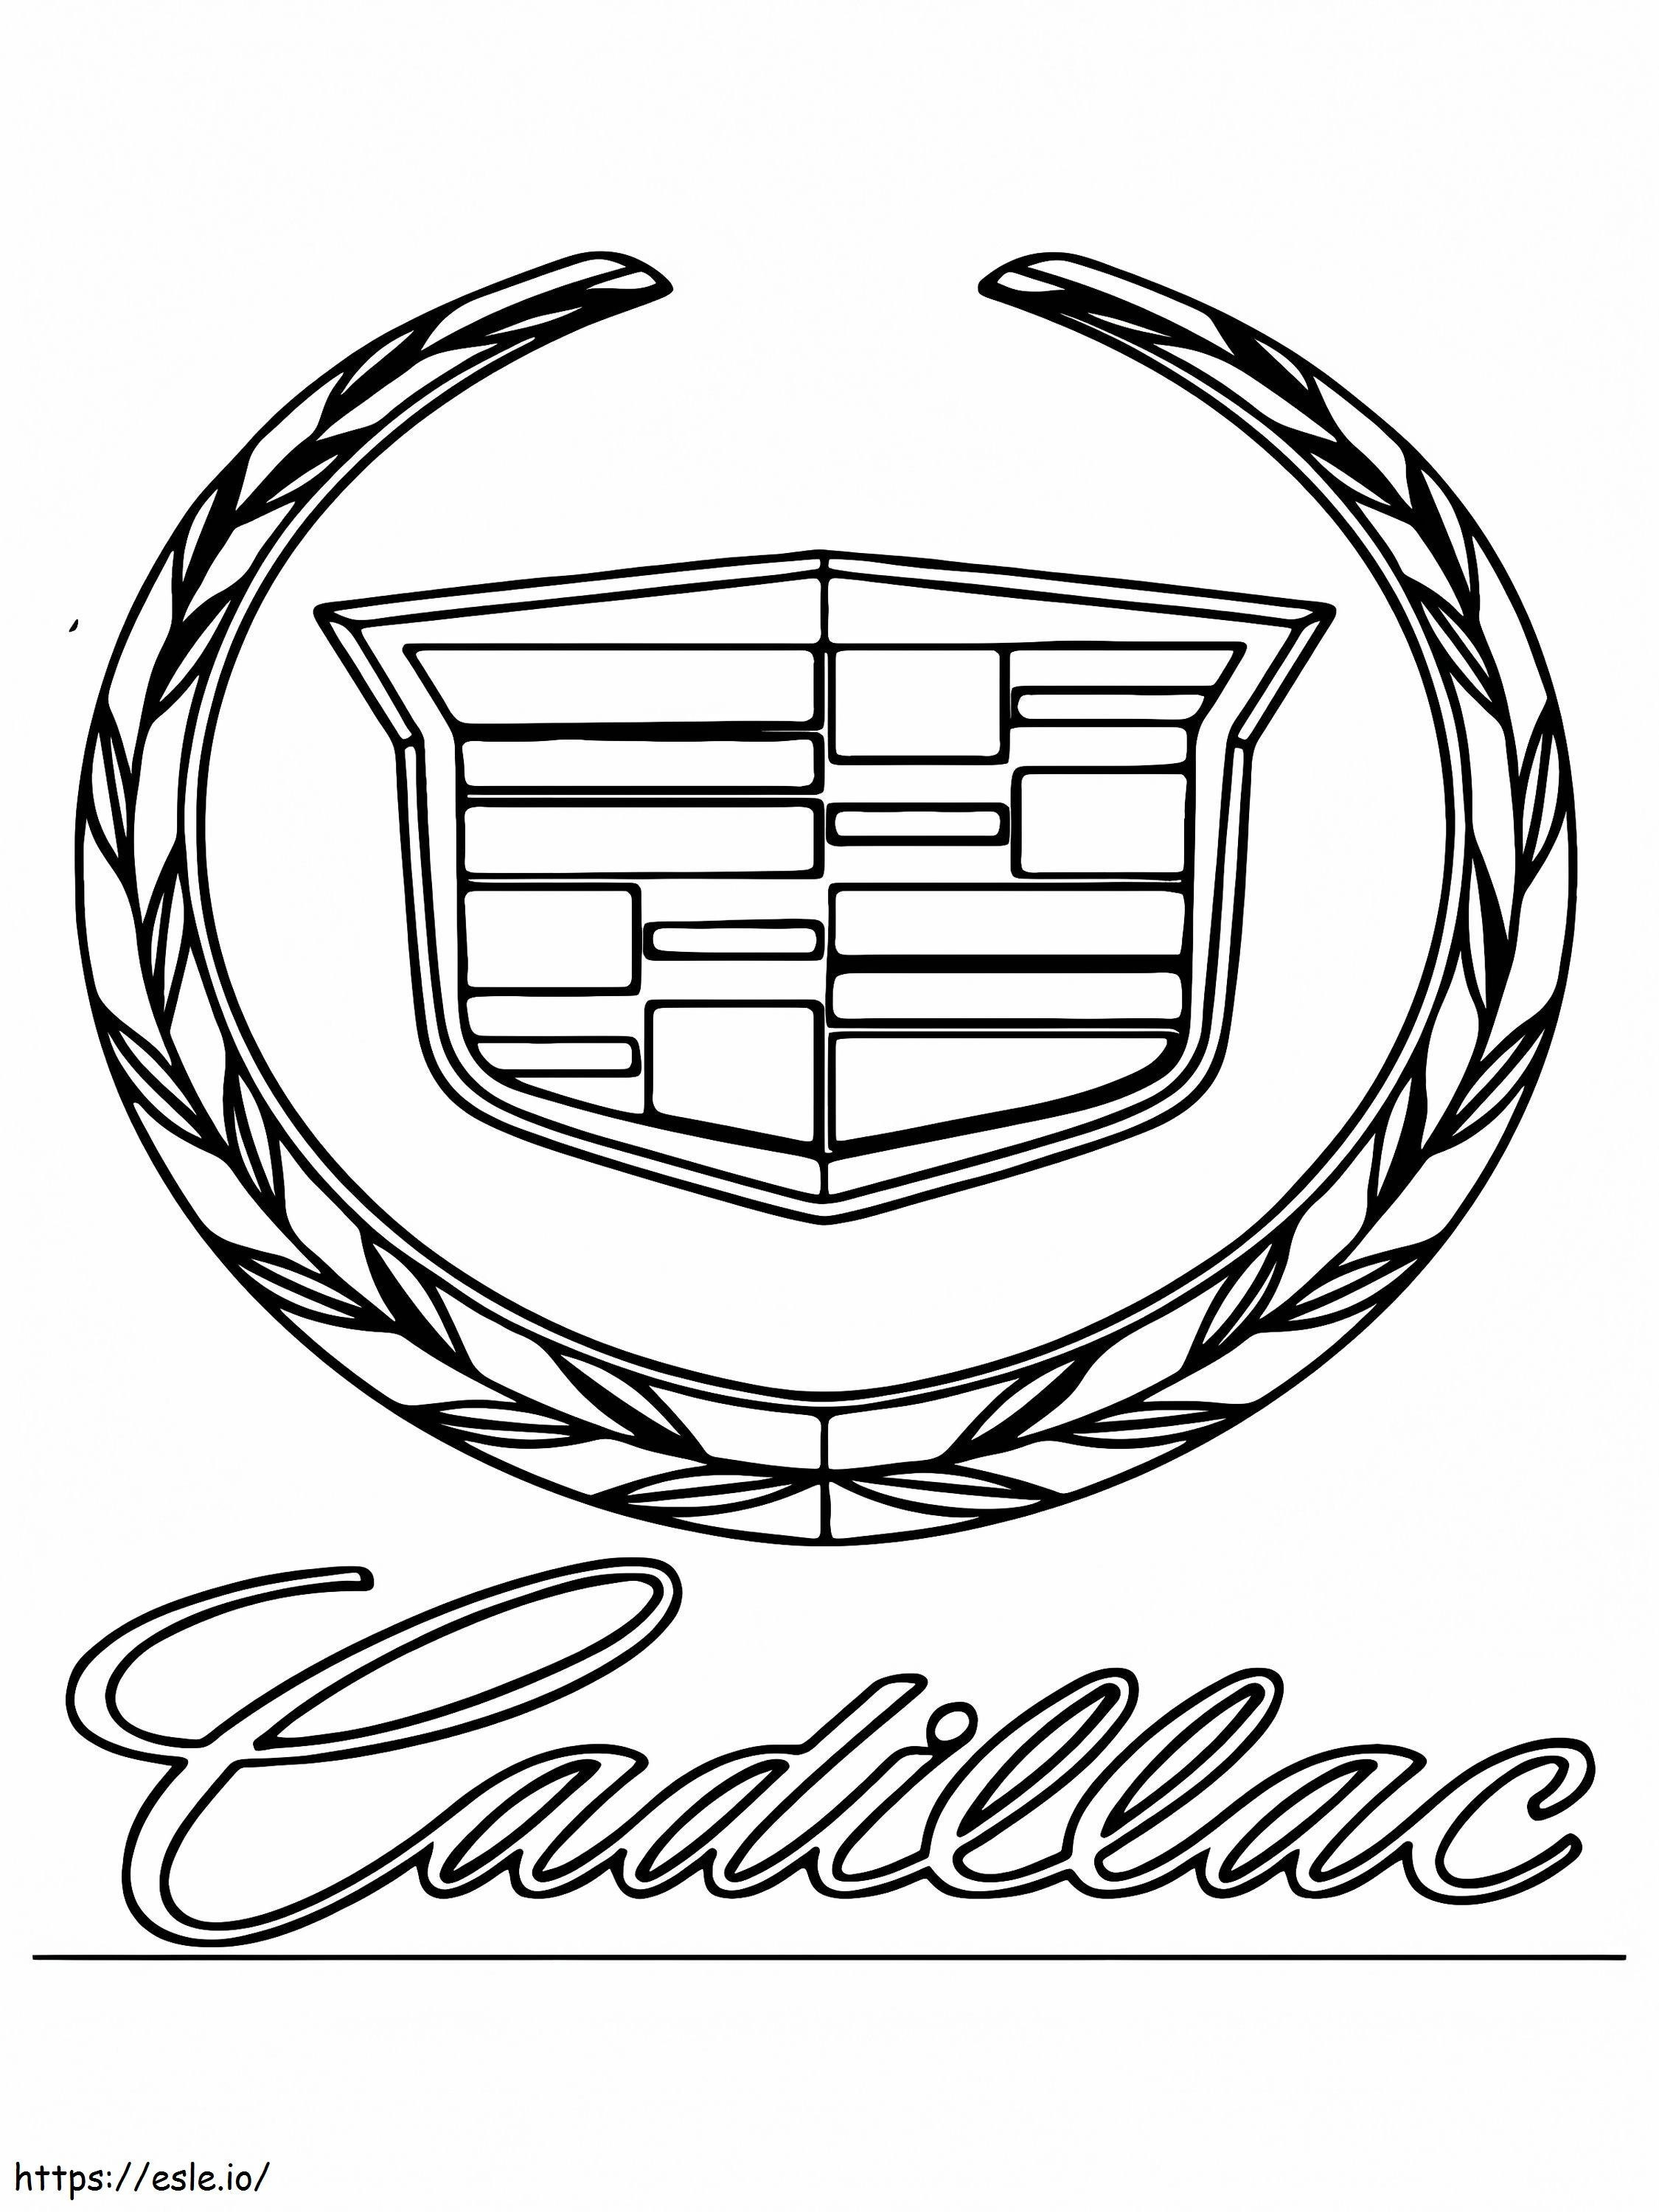 Cadillac Araba Logosu boyama